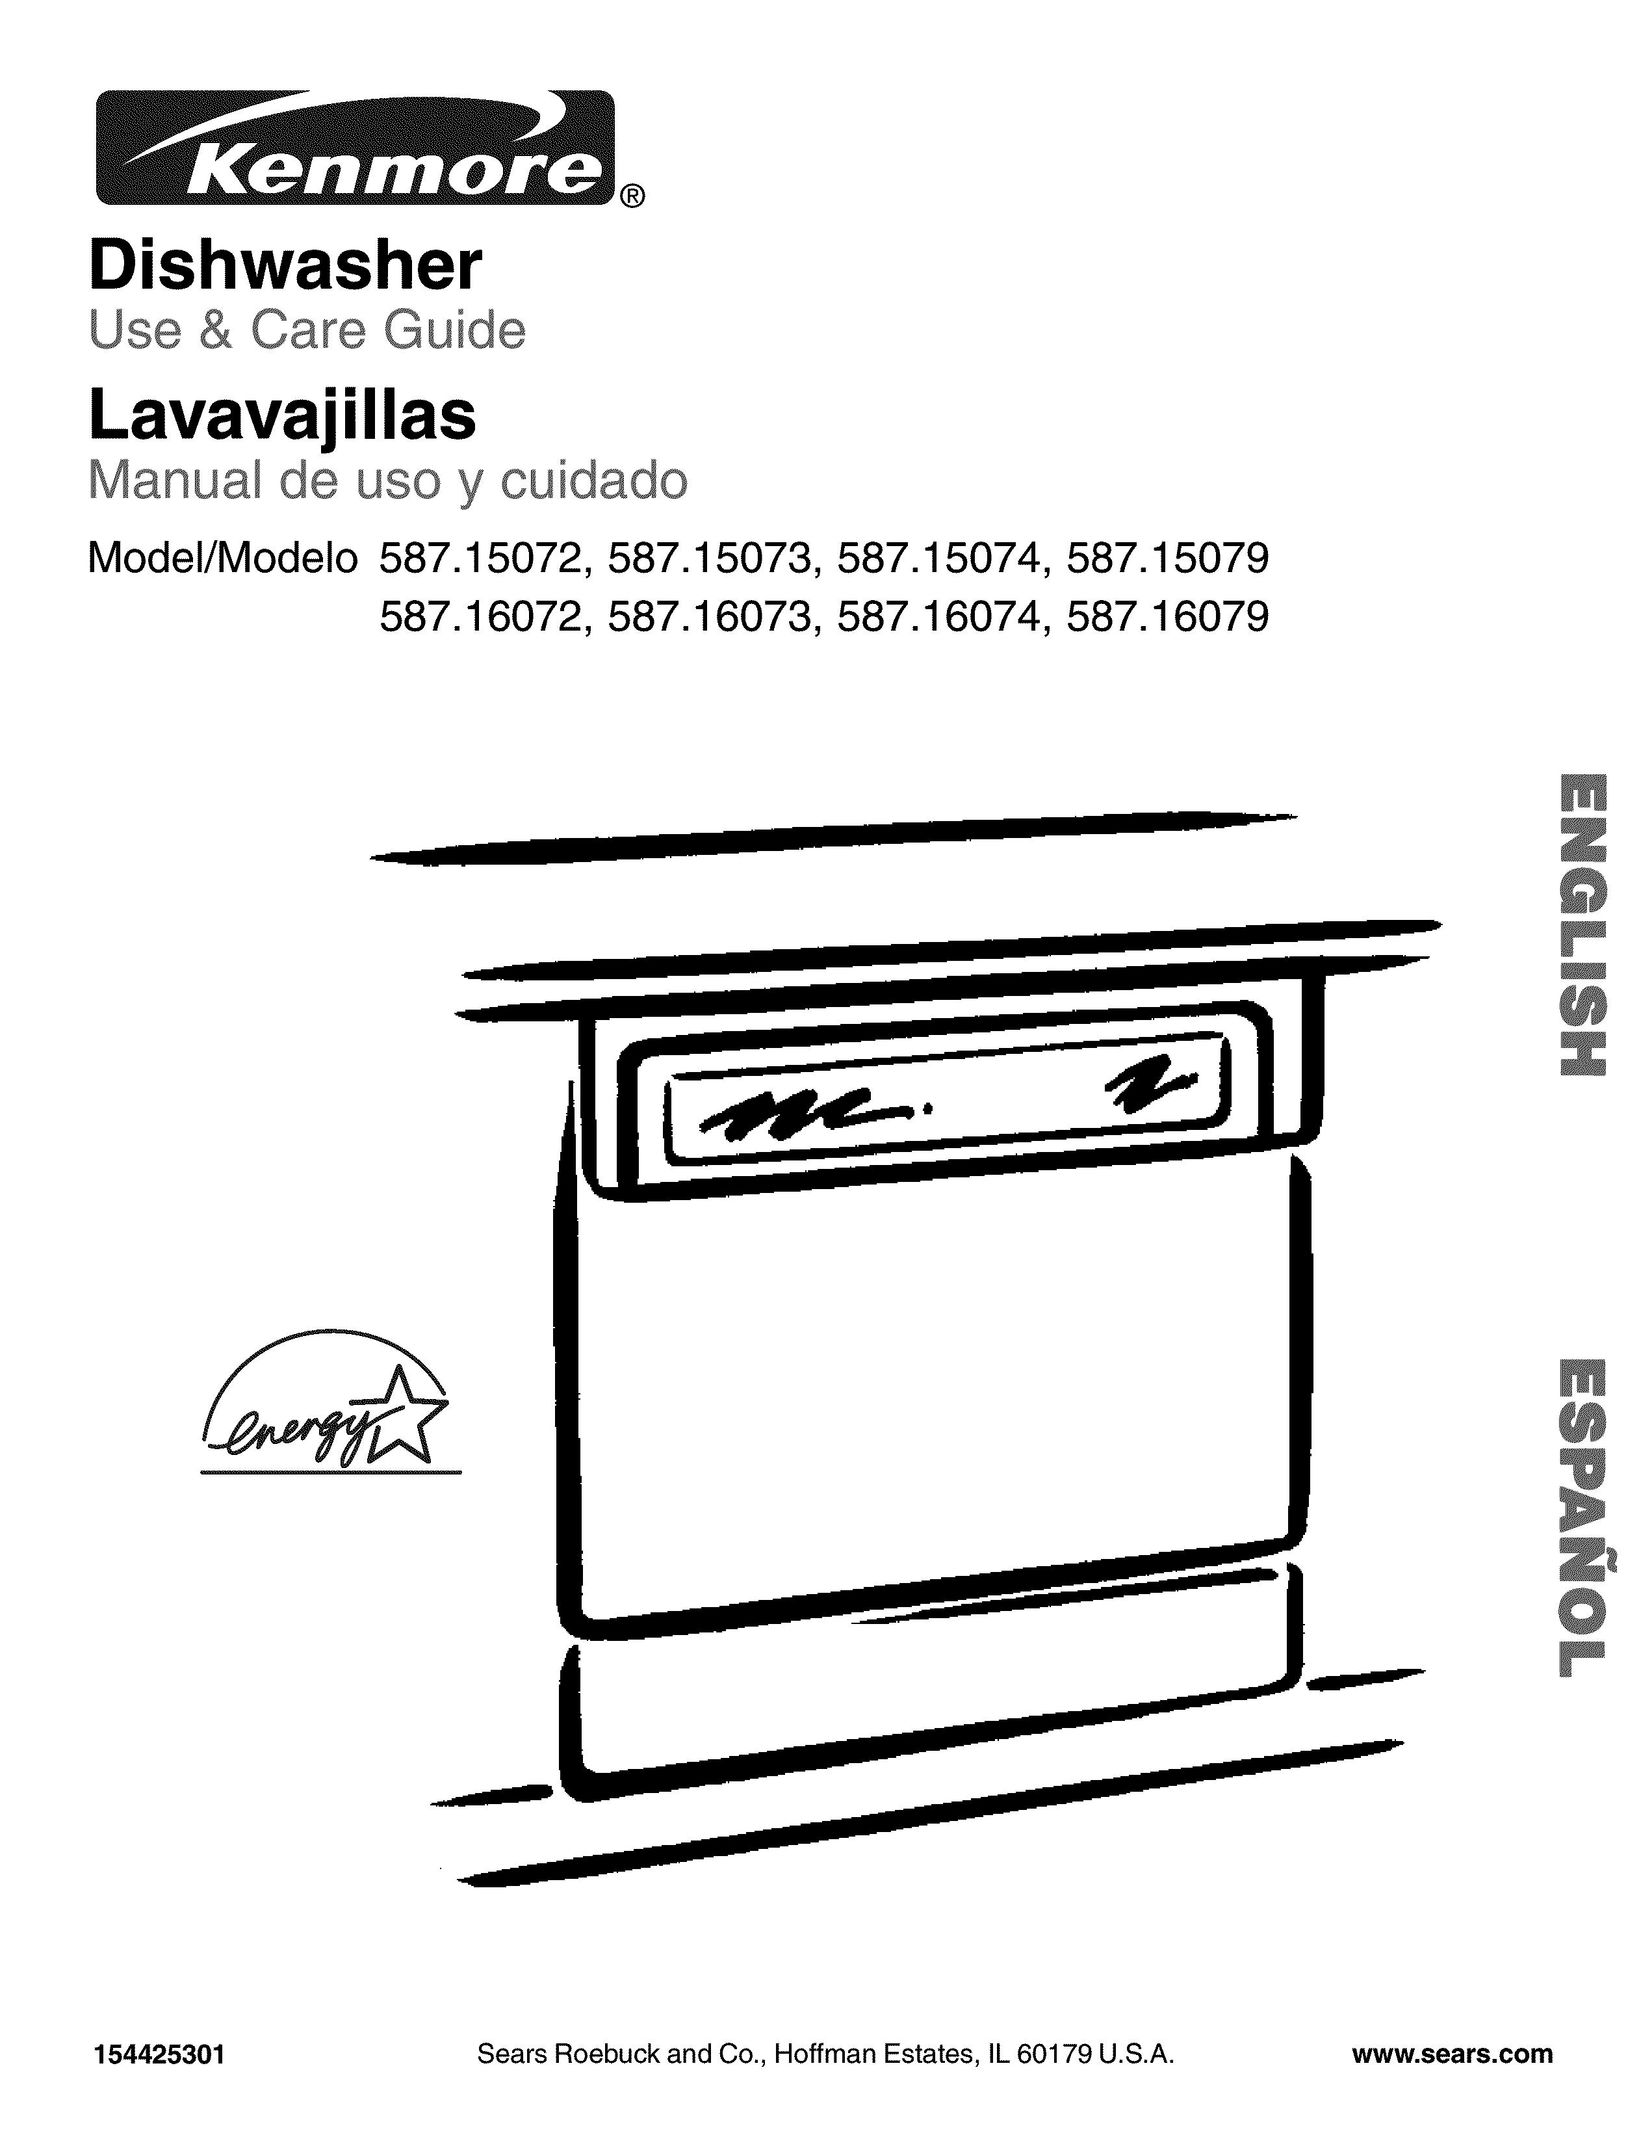 Kenmore 587.15072 Dishwasher User Manual